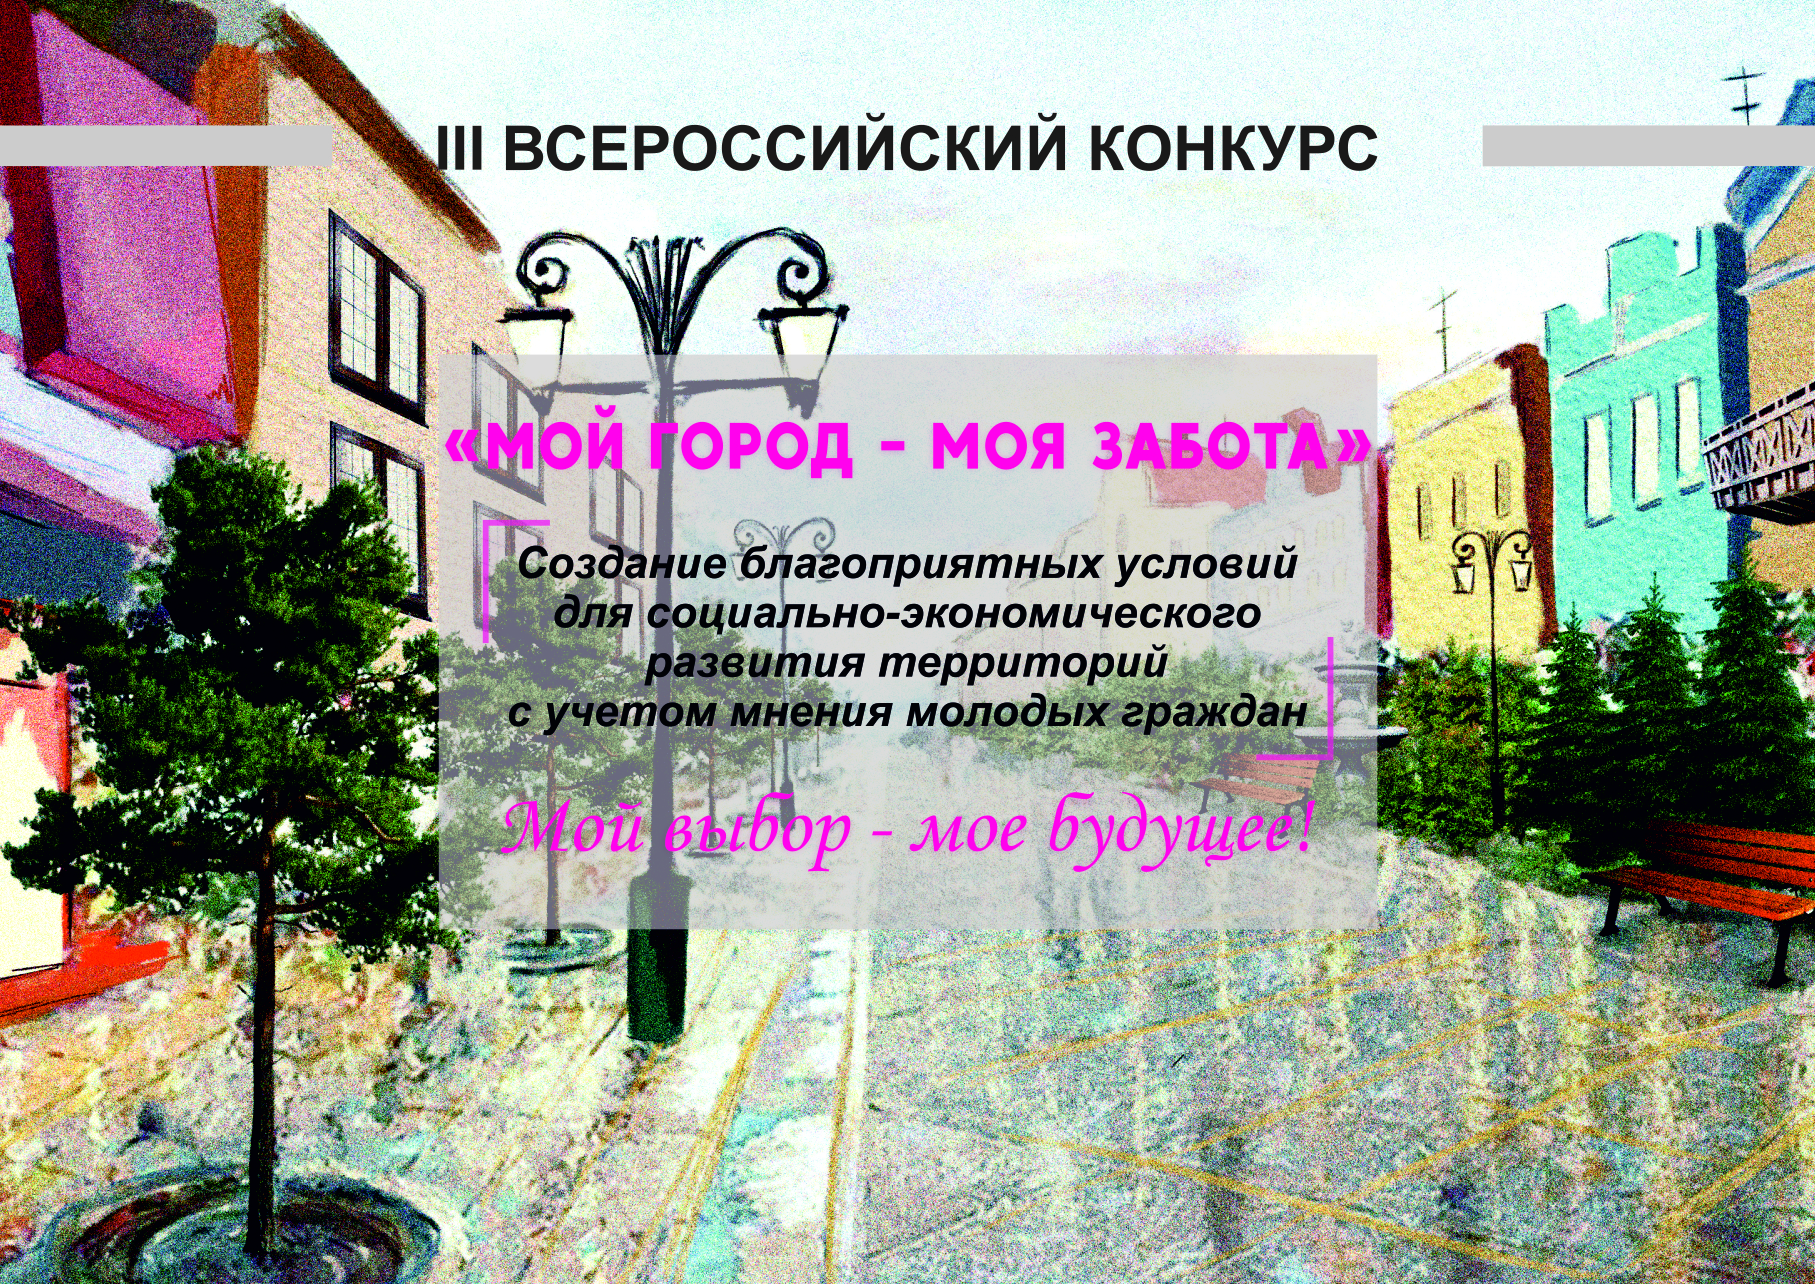 Приглашаем принять участие: III Всероссийский конкурс &amp;quot;Мой город - моя забота&amp;quot;.